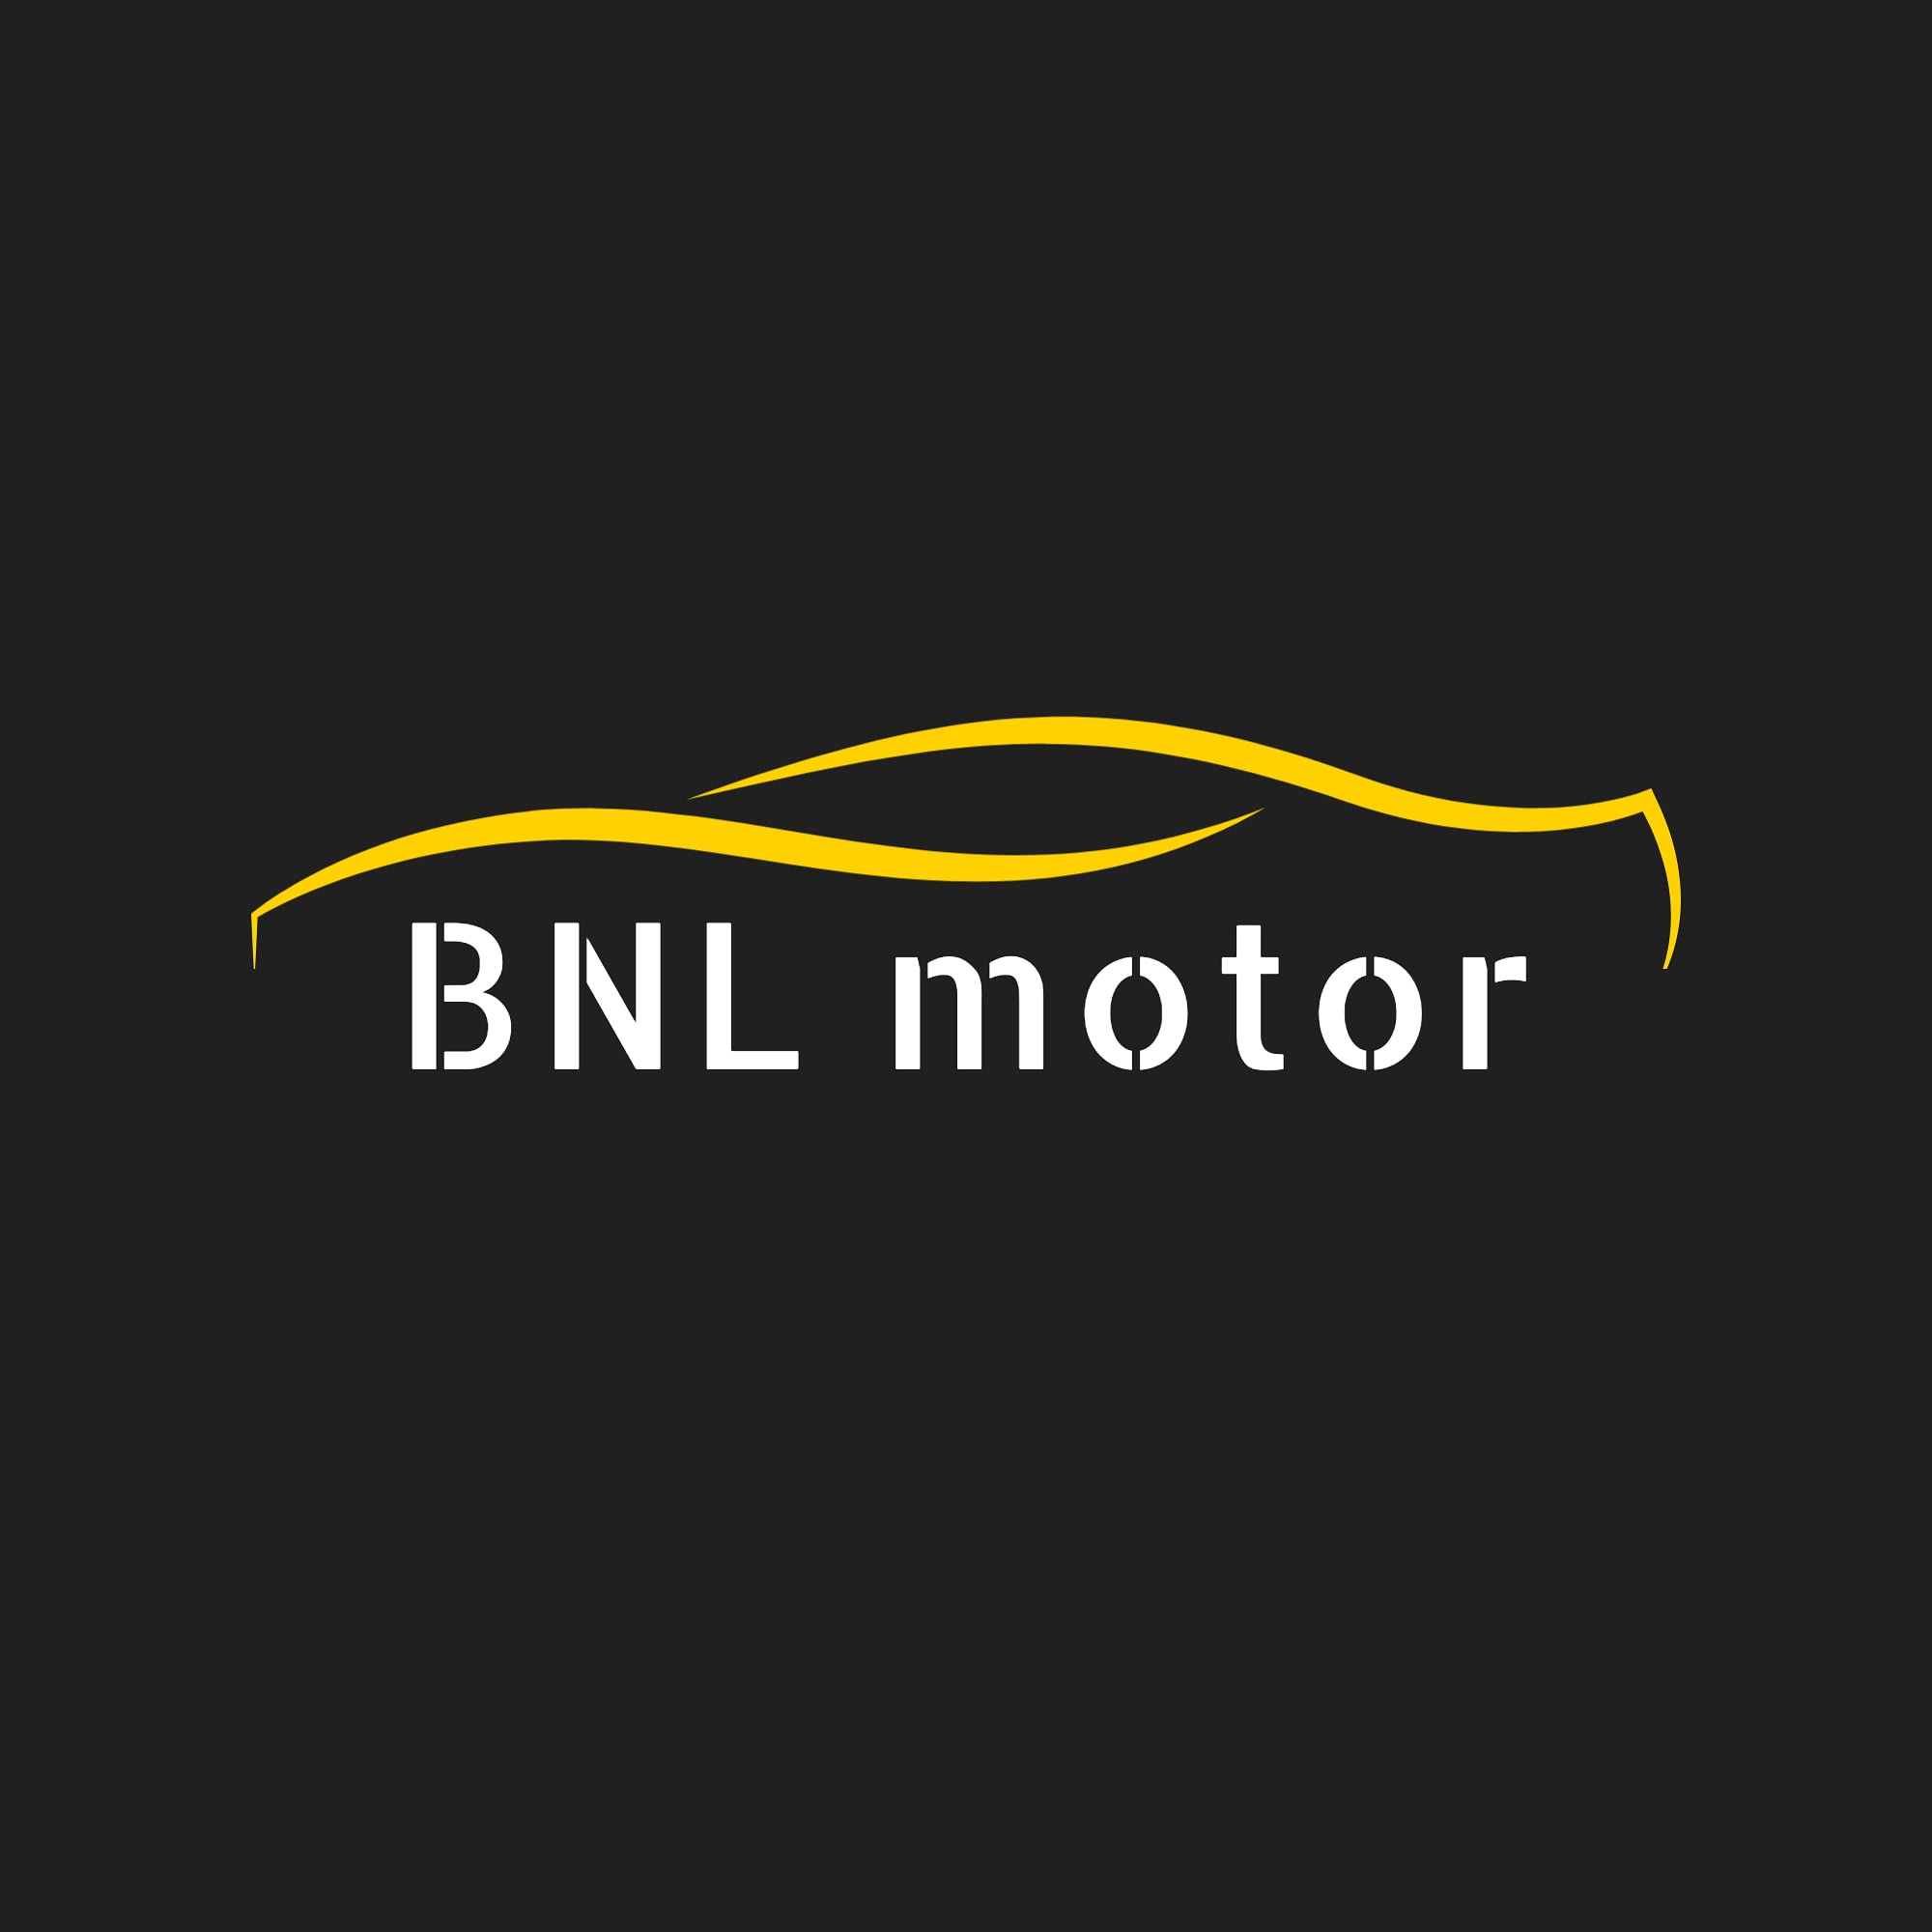 BNL motor